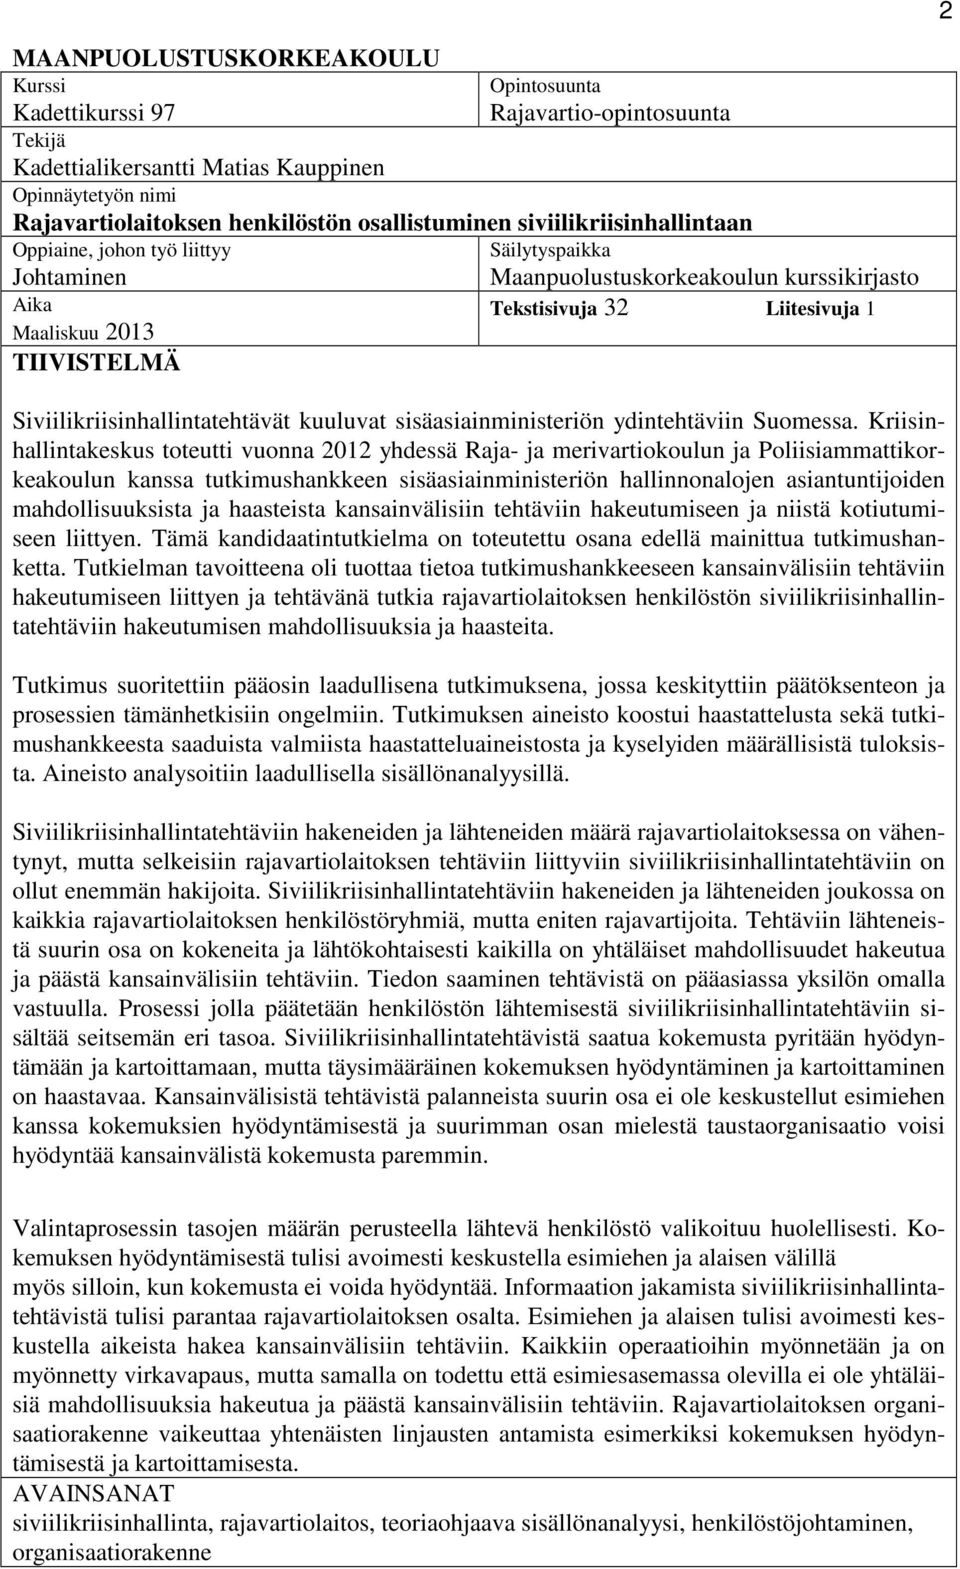 Siviilikriisinhallintatehtävät kuuluvat sisäasiainministeriön ydintehtäviin Suomessa.